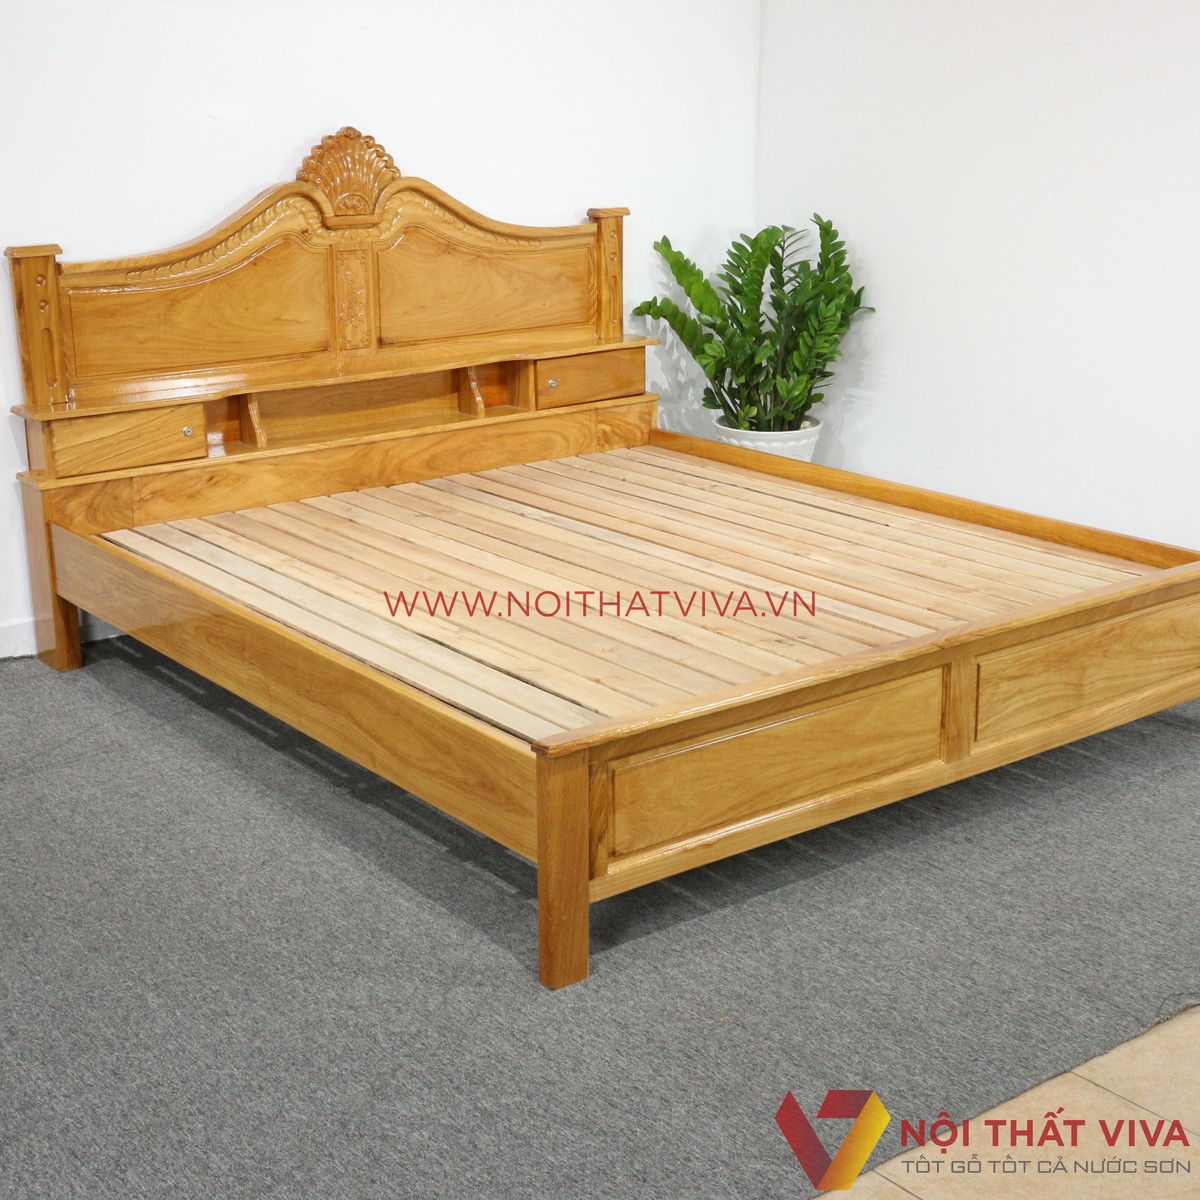 Loạt mẫu giường ngủ đẹp gỗ tự nhiên nổi đình đám nhất hiện nay